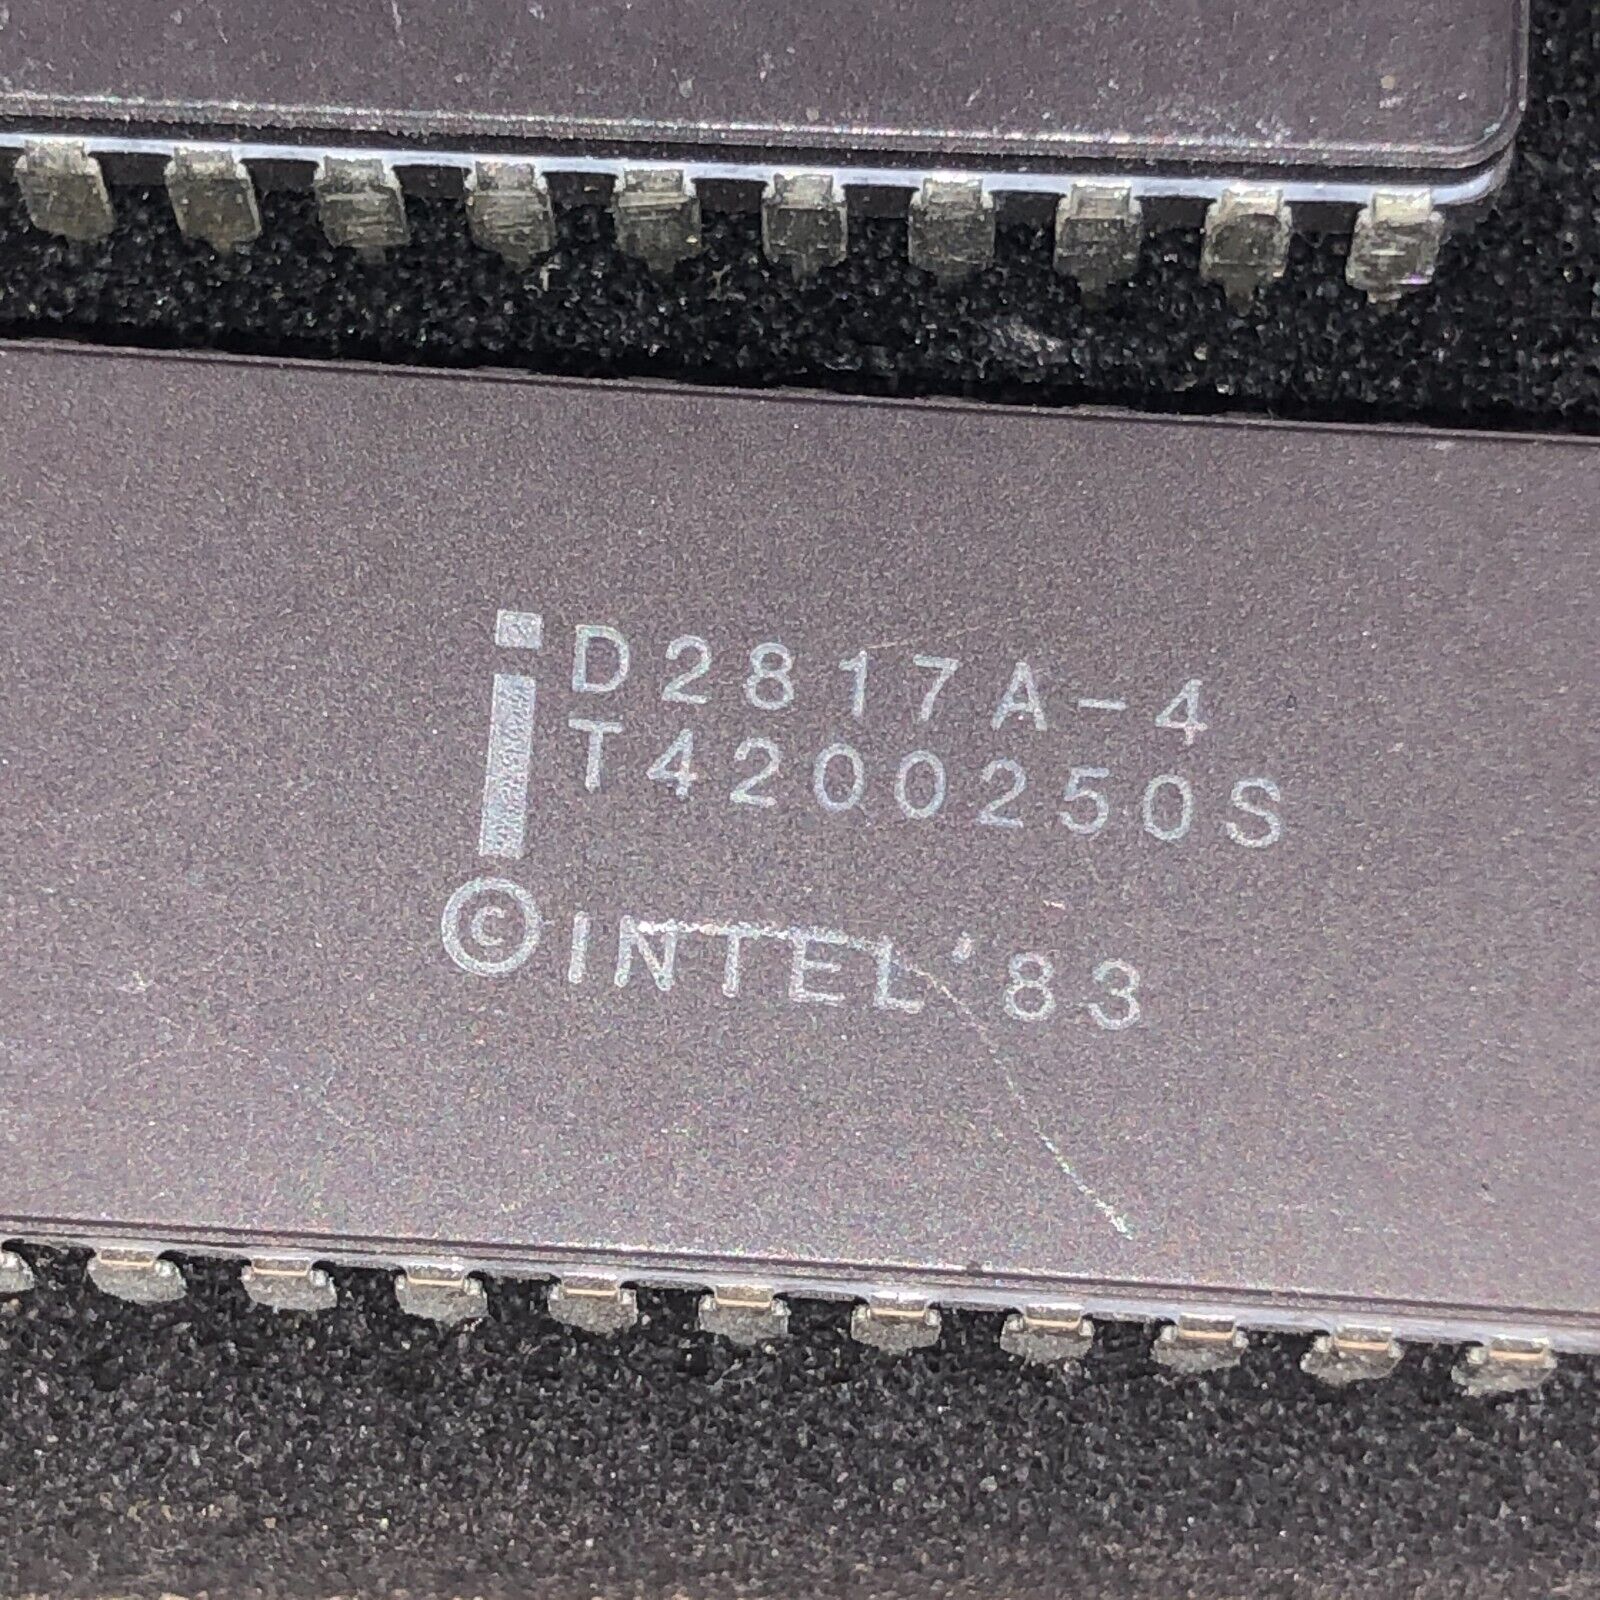 Lot of 3: Intel D2817A-4